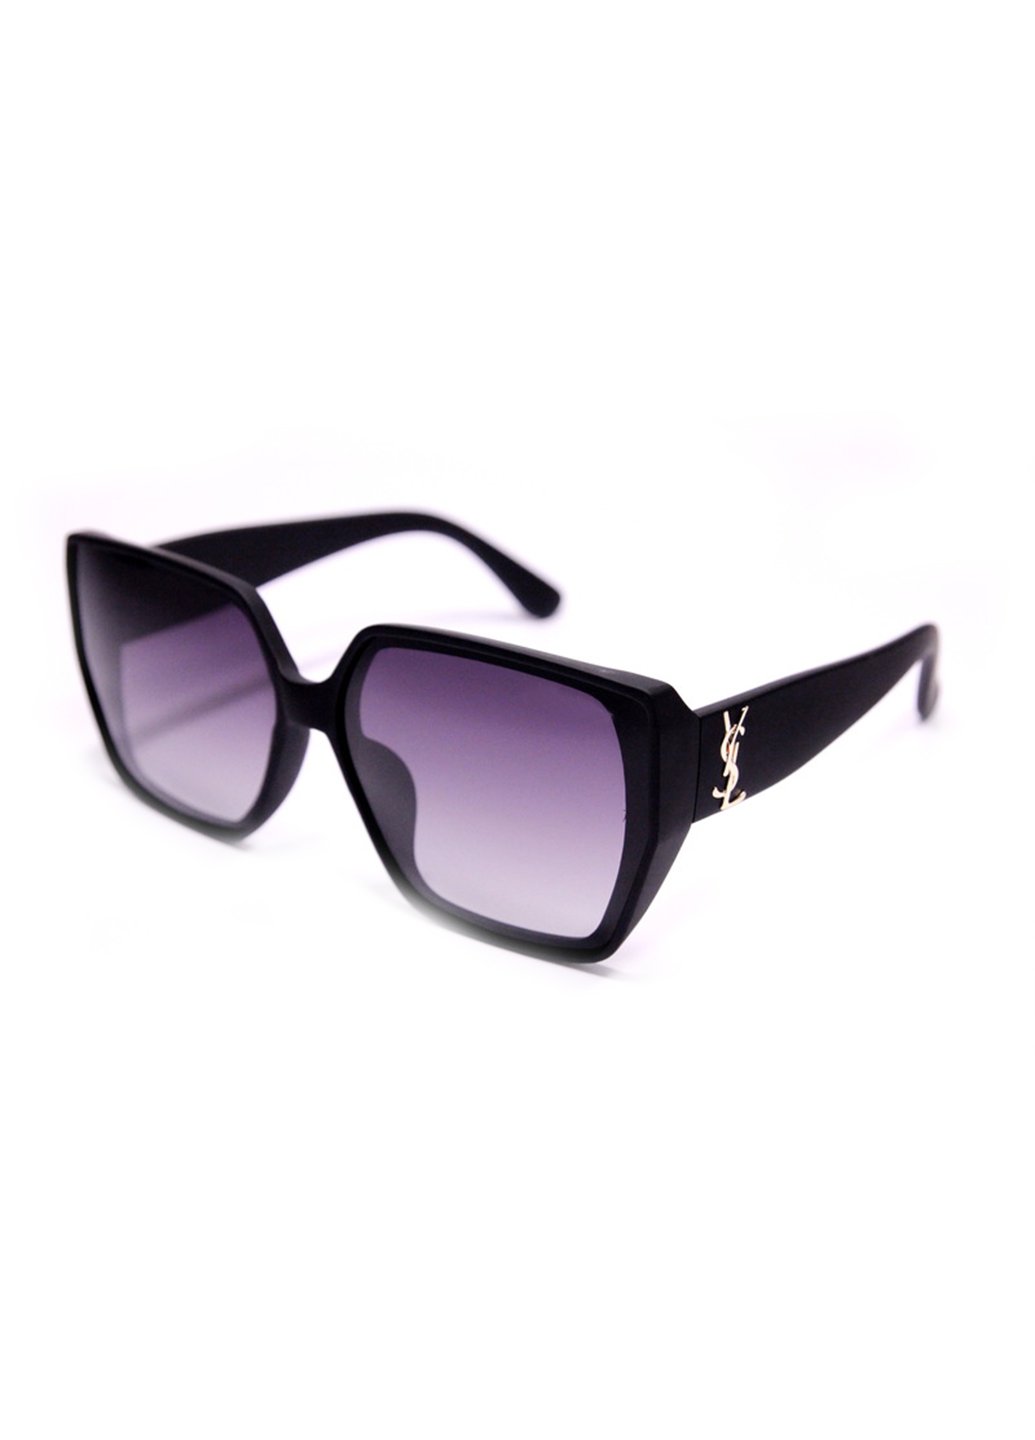 Купить Женские солнцезащитные очки Merlini YSLP1001 100312 - Фиолетовый в интернет-магазине